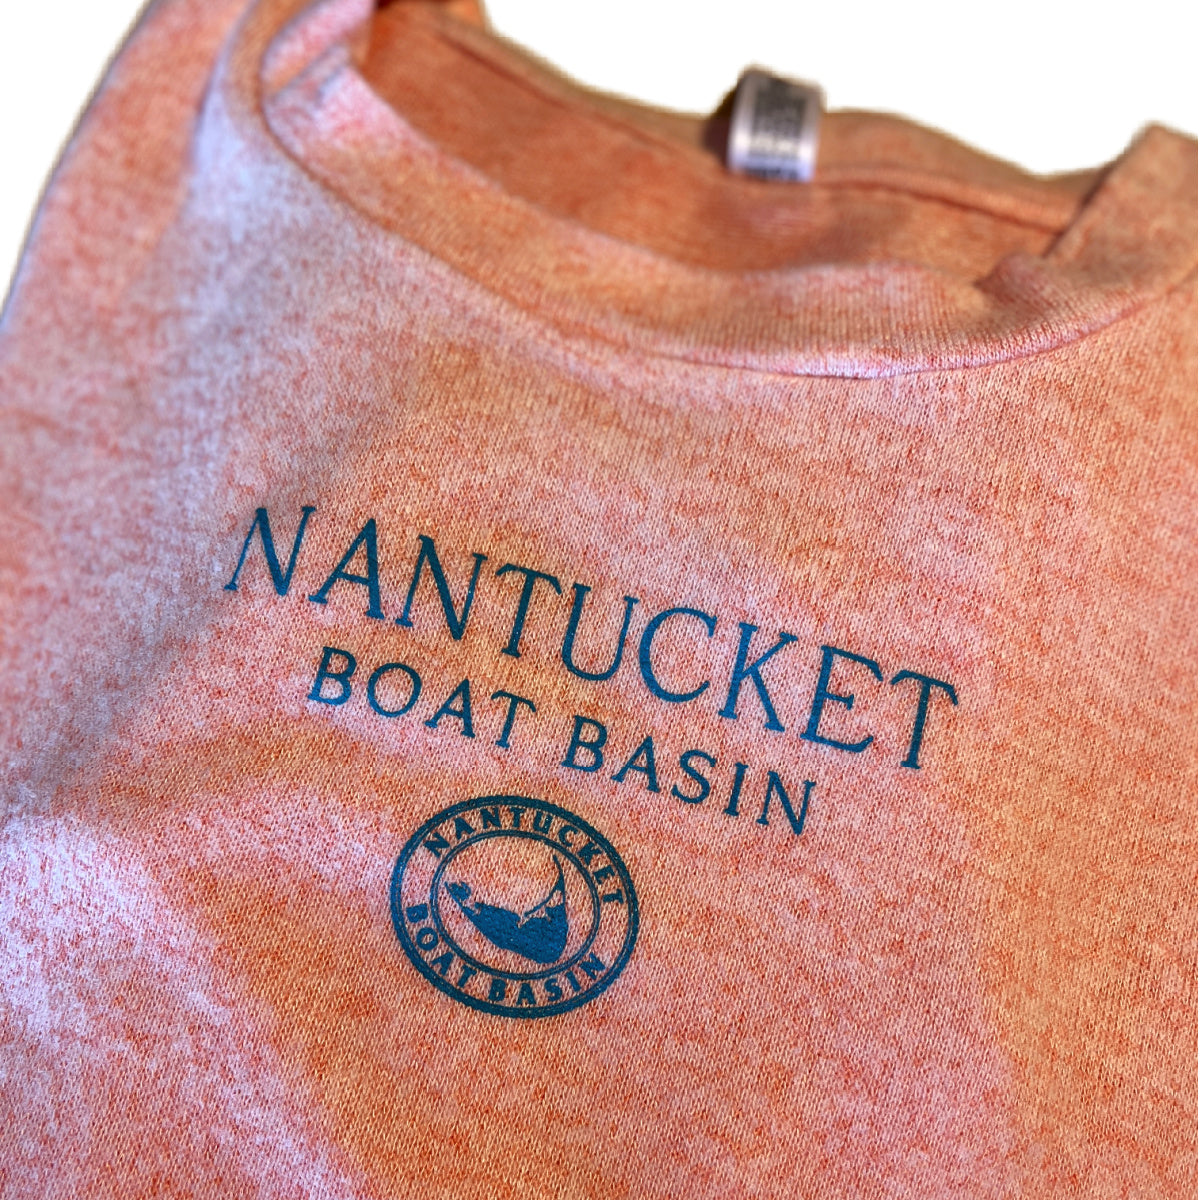 Nantucket Boat Basin Natali Drop Shoulder Crew